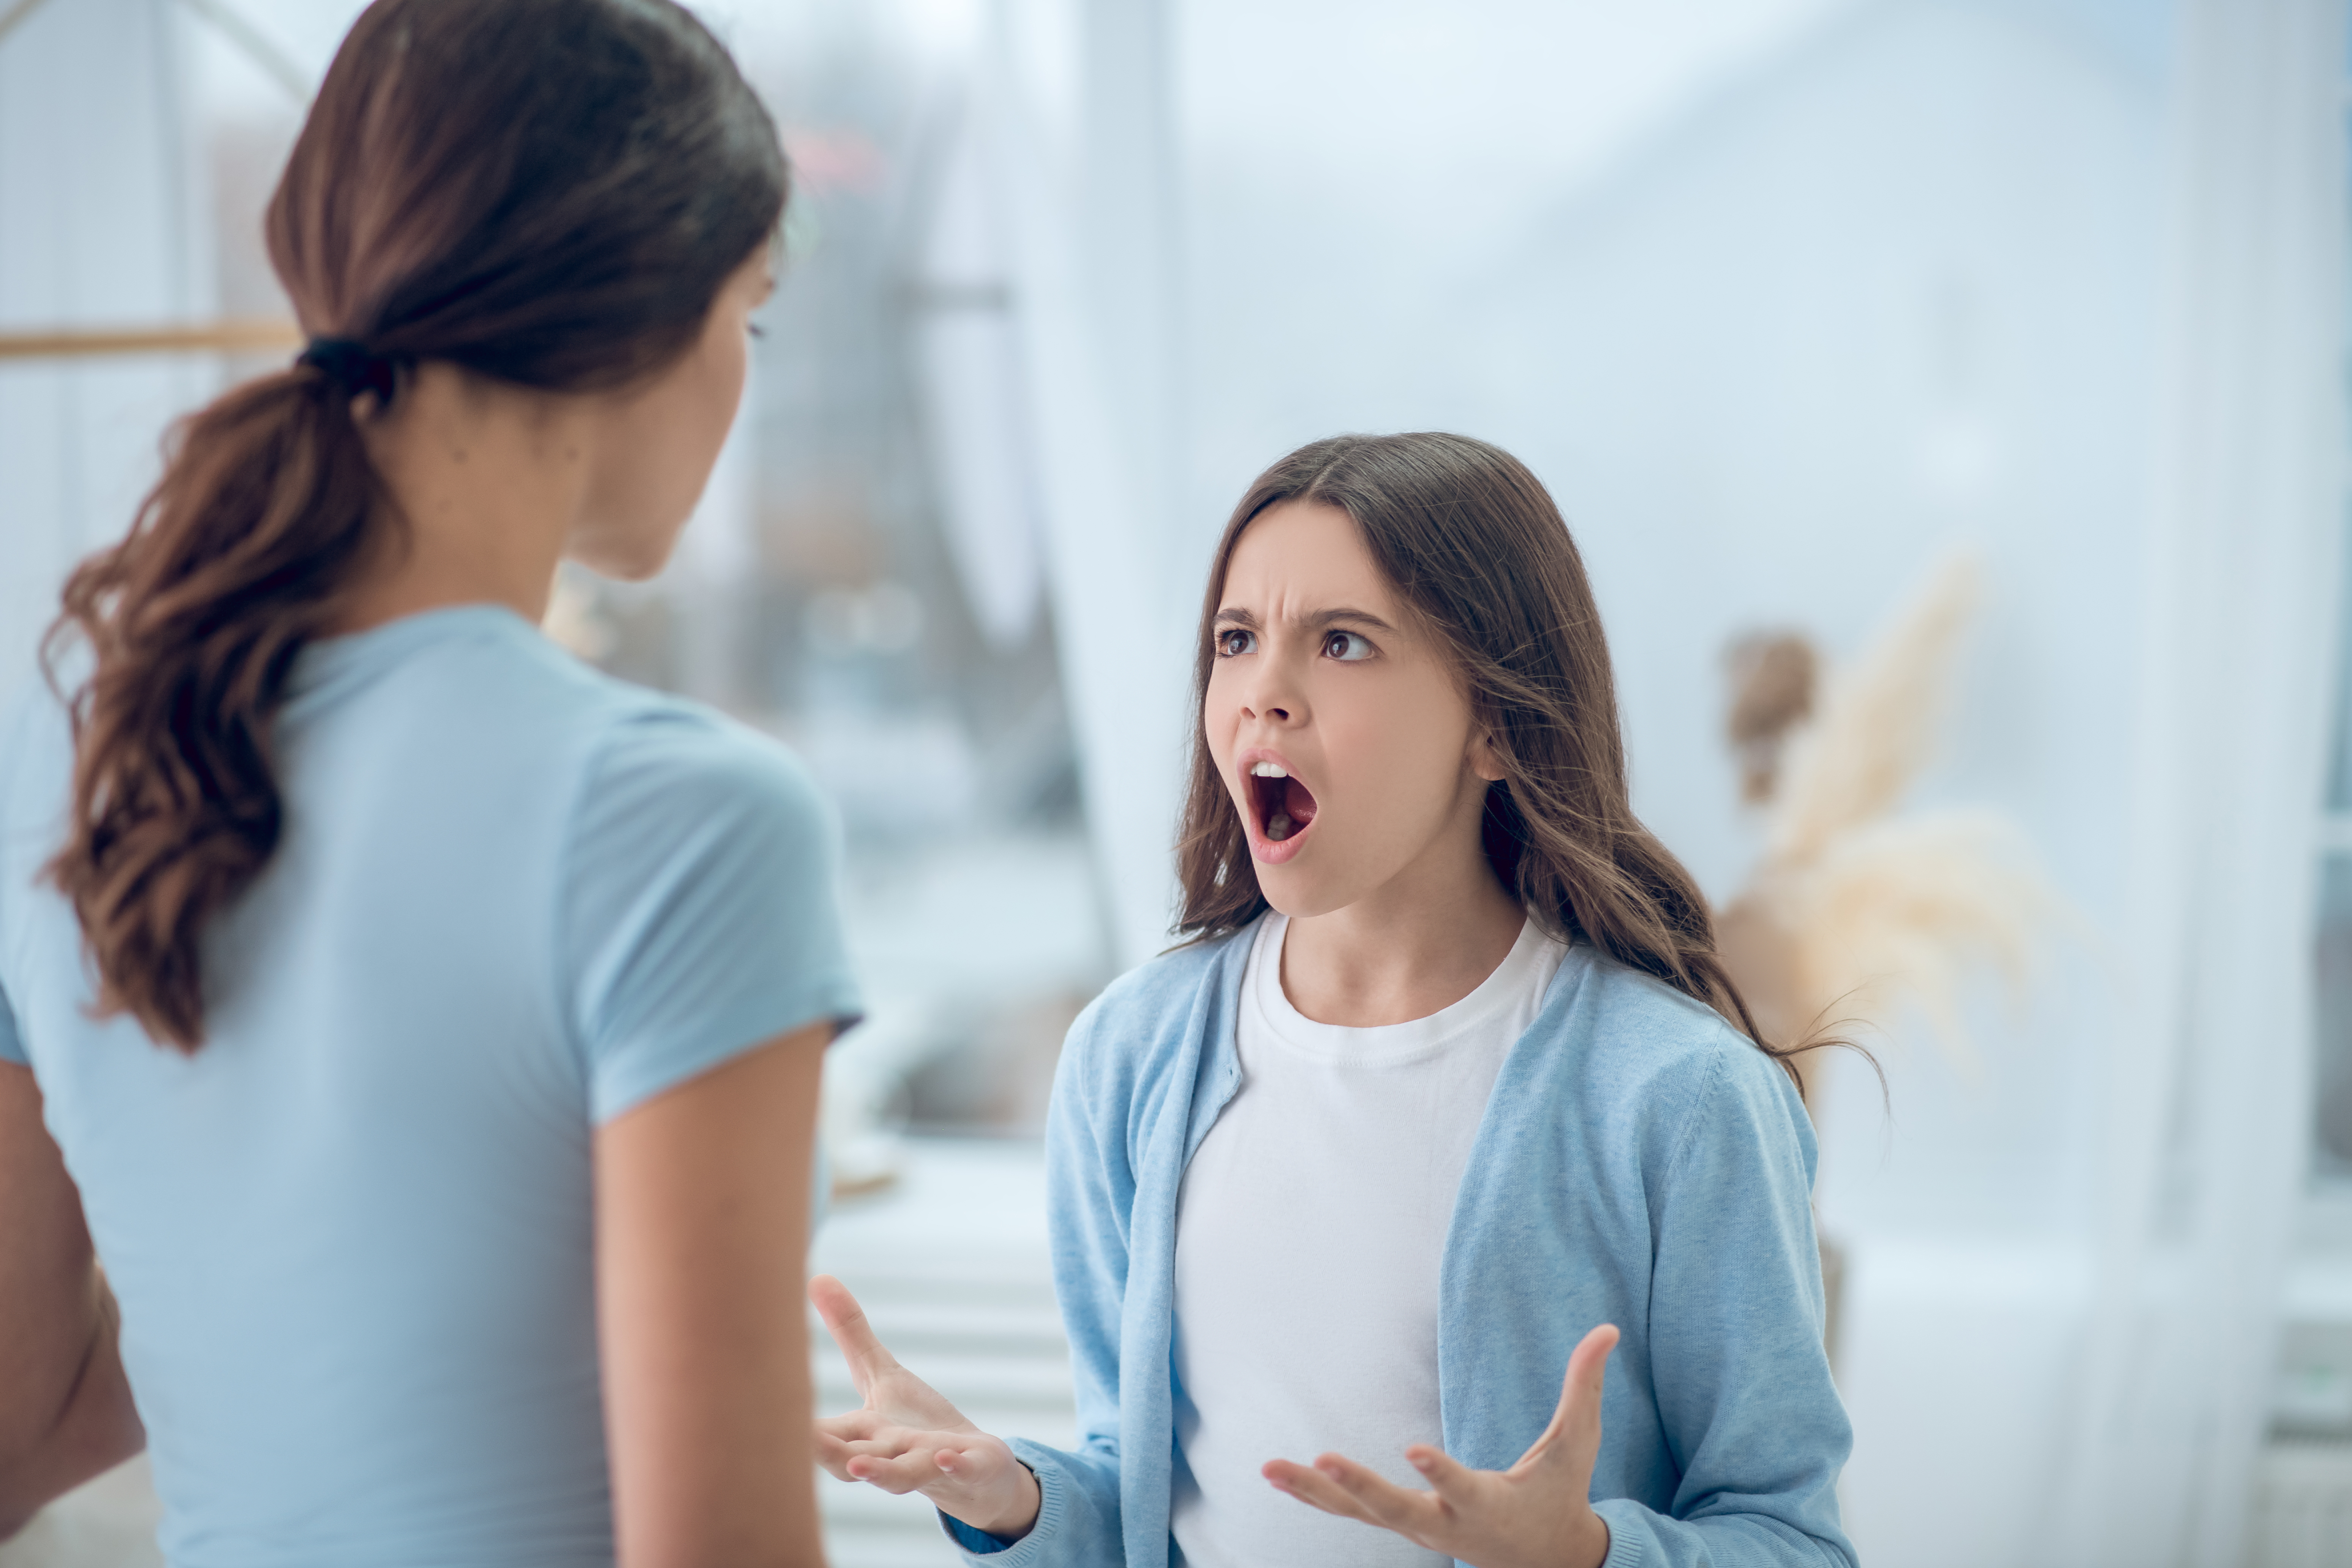 Une adolescente est vue en train de crier sur la femme qui se tient devant elle | Source : Shutterstock